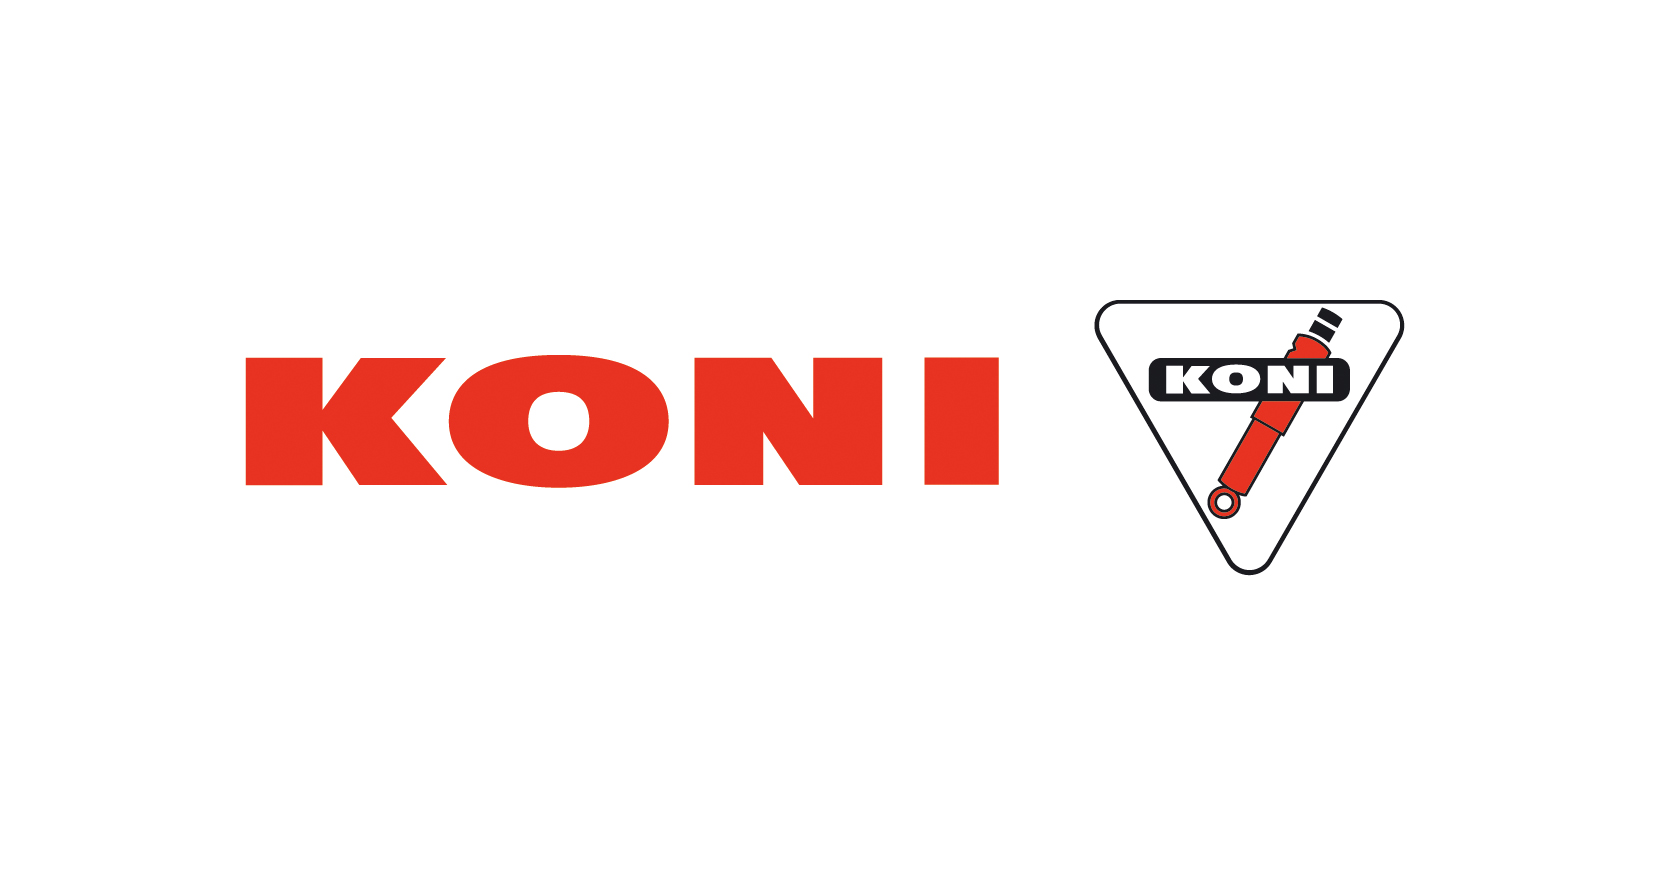 2005 KONI logo